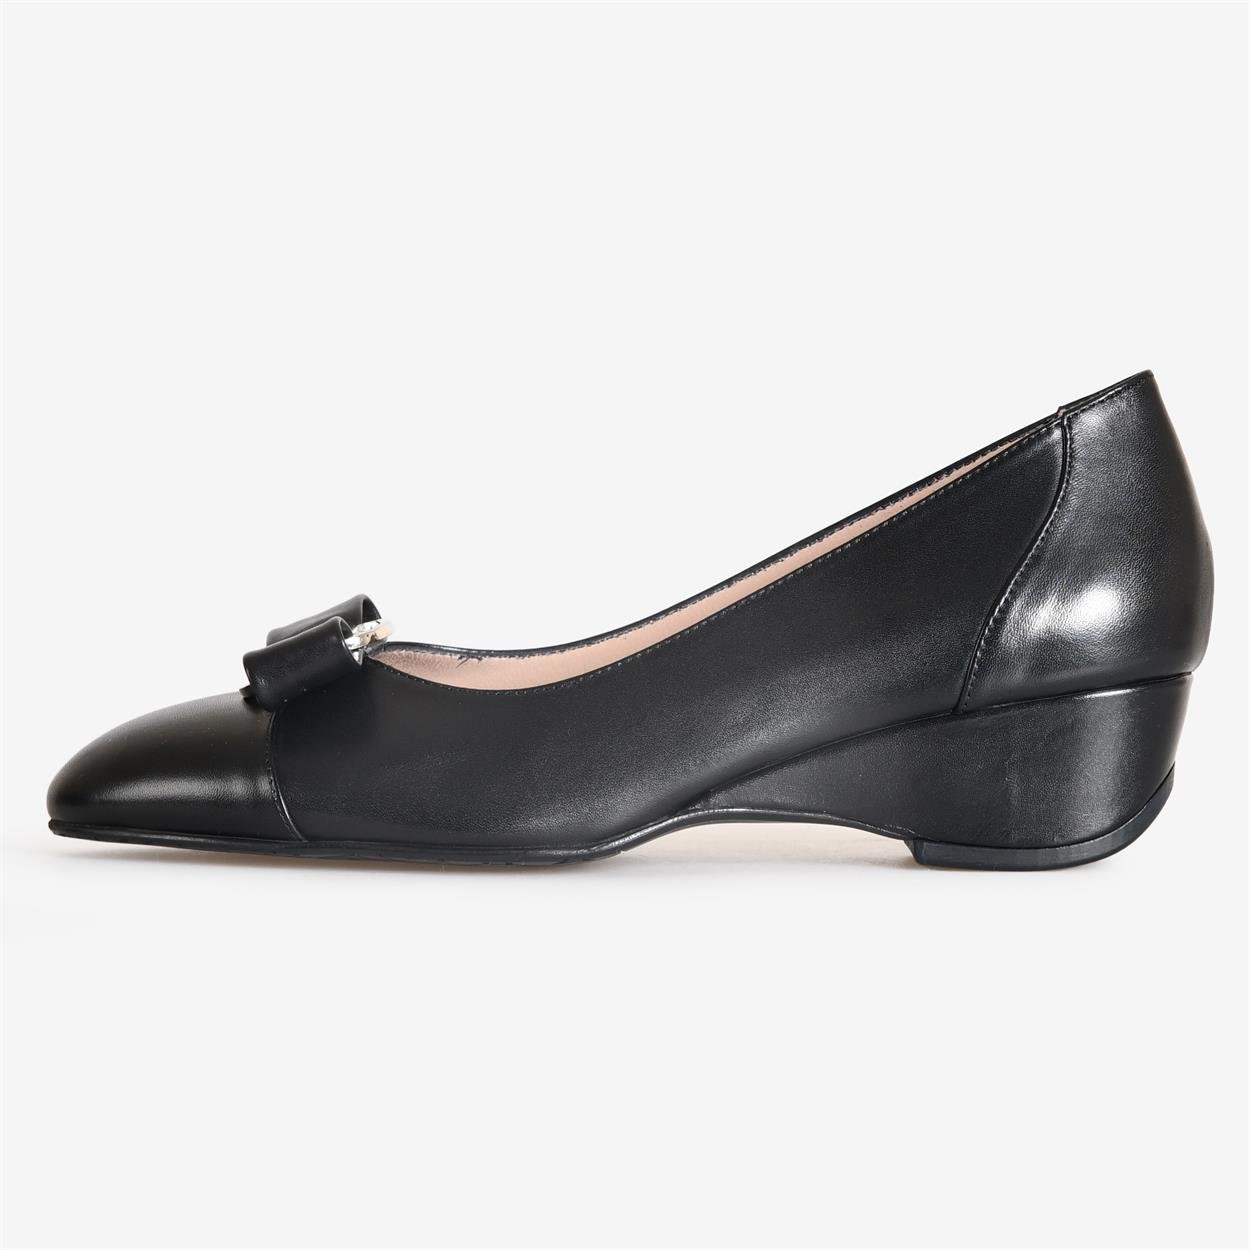 Siyah Deri Kadın Dolgu Topuk Ayakkabı | Flower Ayakkabı